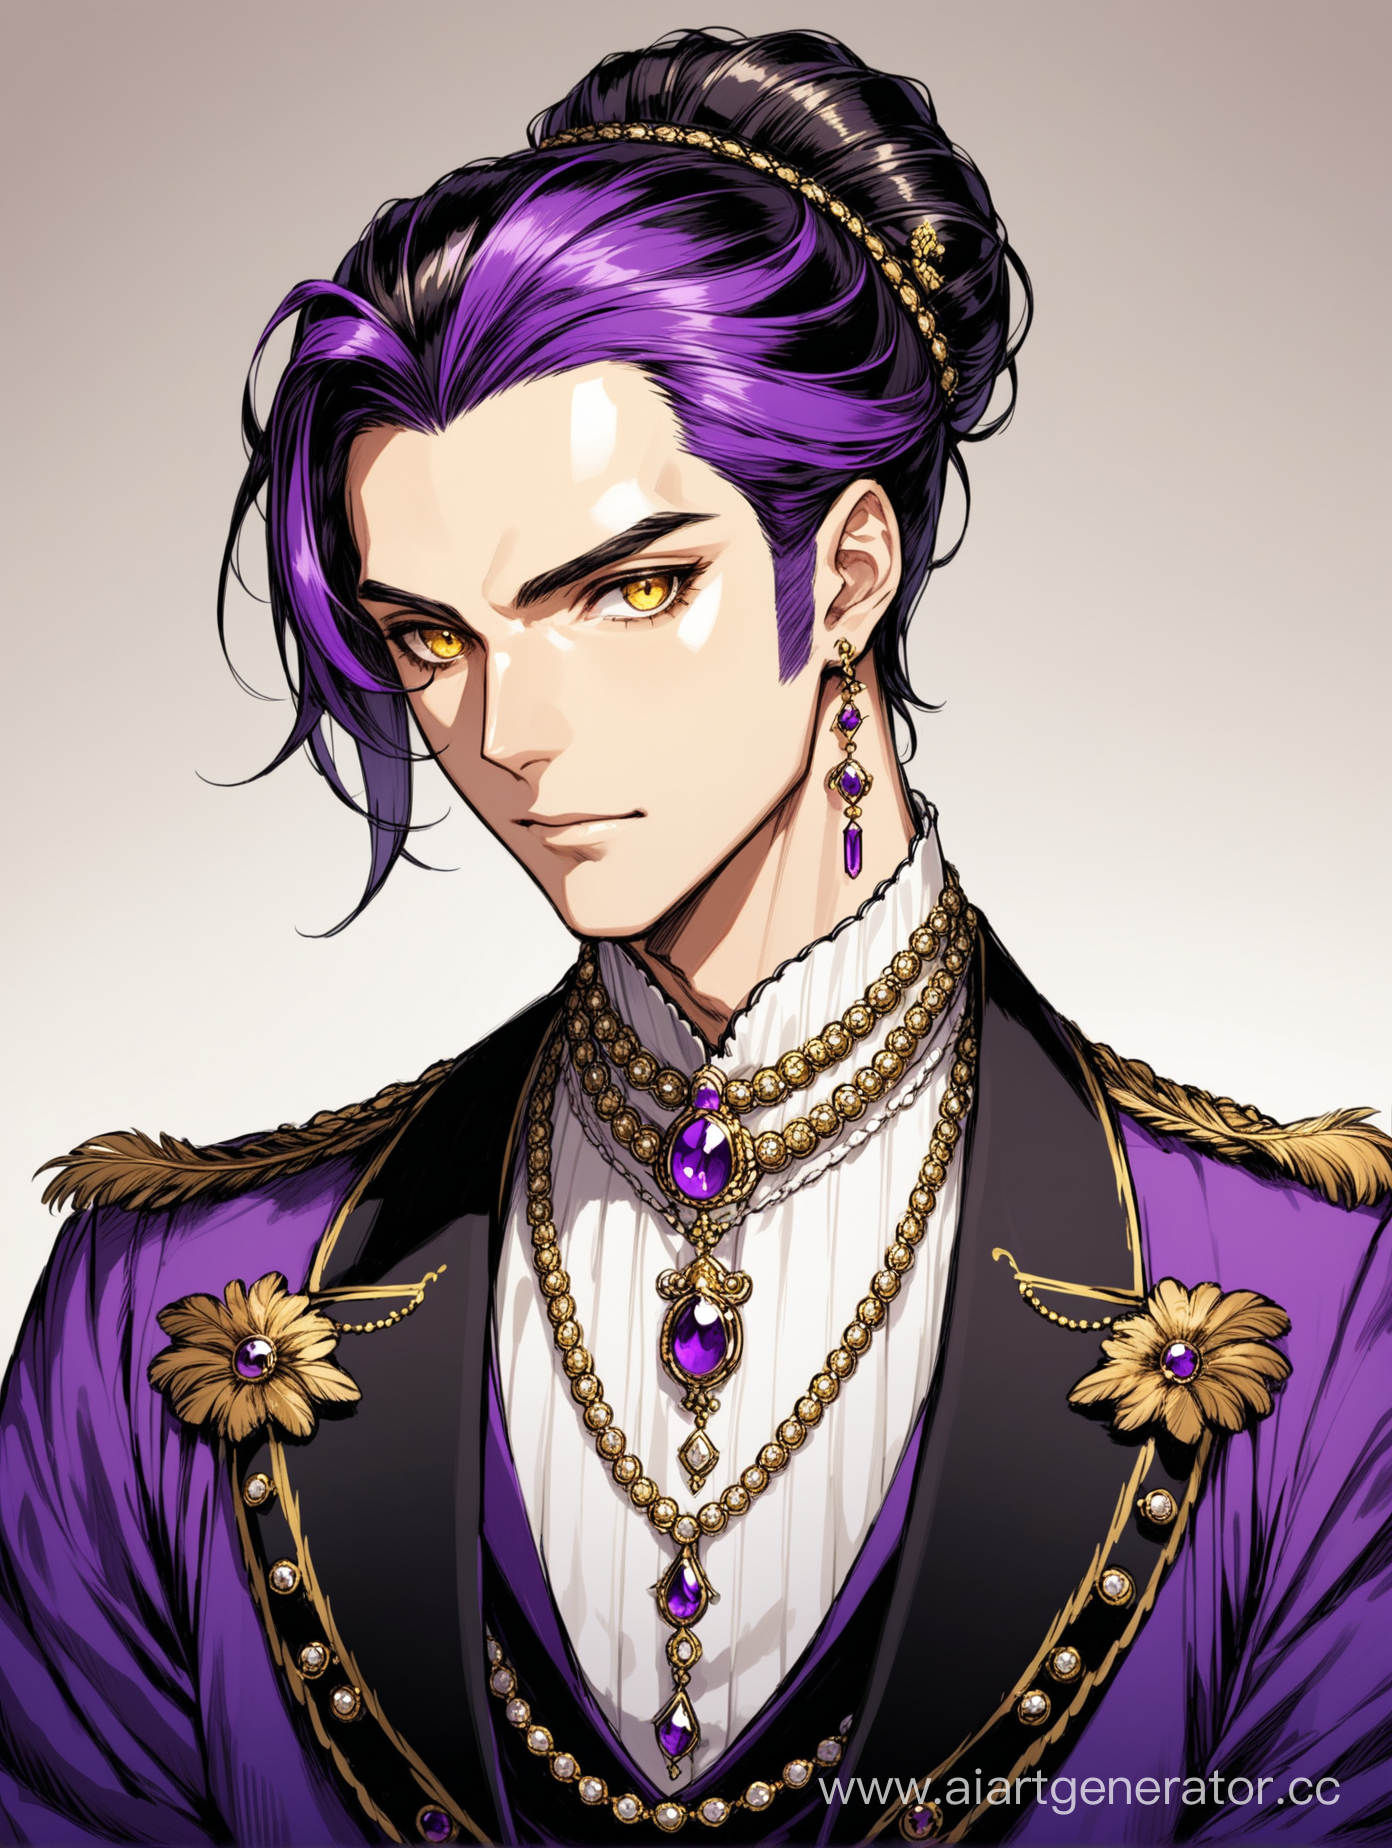 парень, золотые глаза, черно-фиолетовая палитра, перья, аристократ, много украшений, волосы собраны в прическу